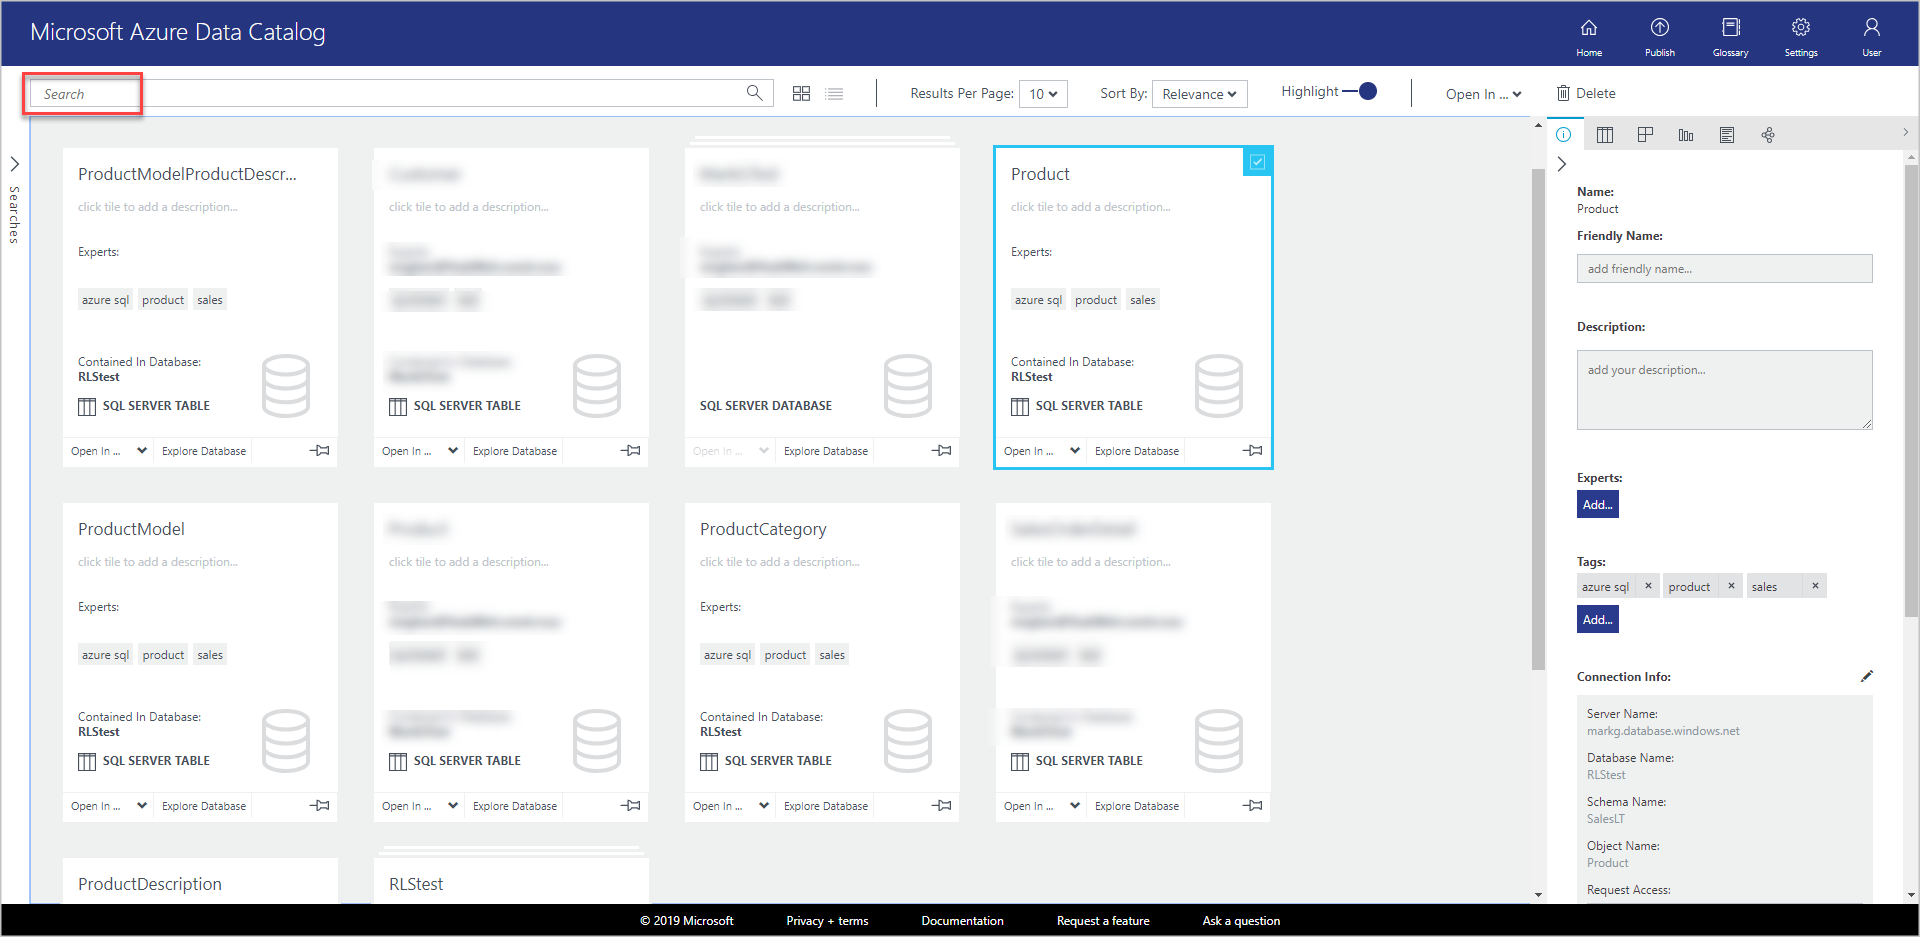 Na janela Catálogo de Dados do Microsoft Azure, há novos blocos no modo de exibição de grade para cada um dos objetos registrados.